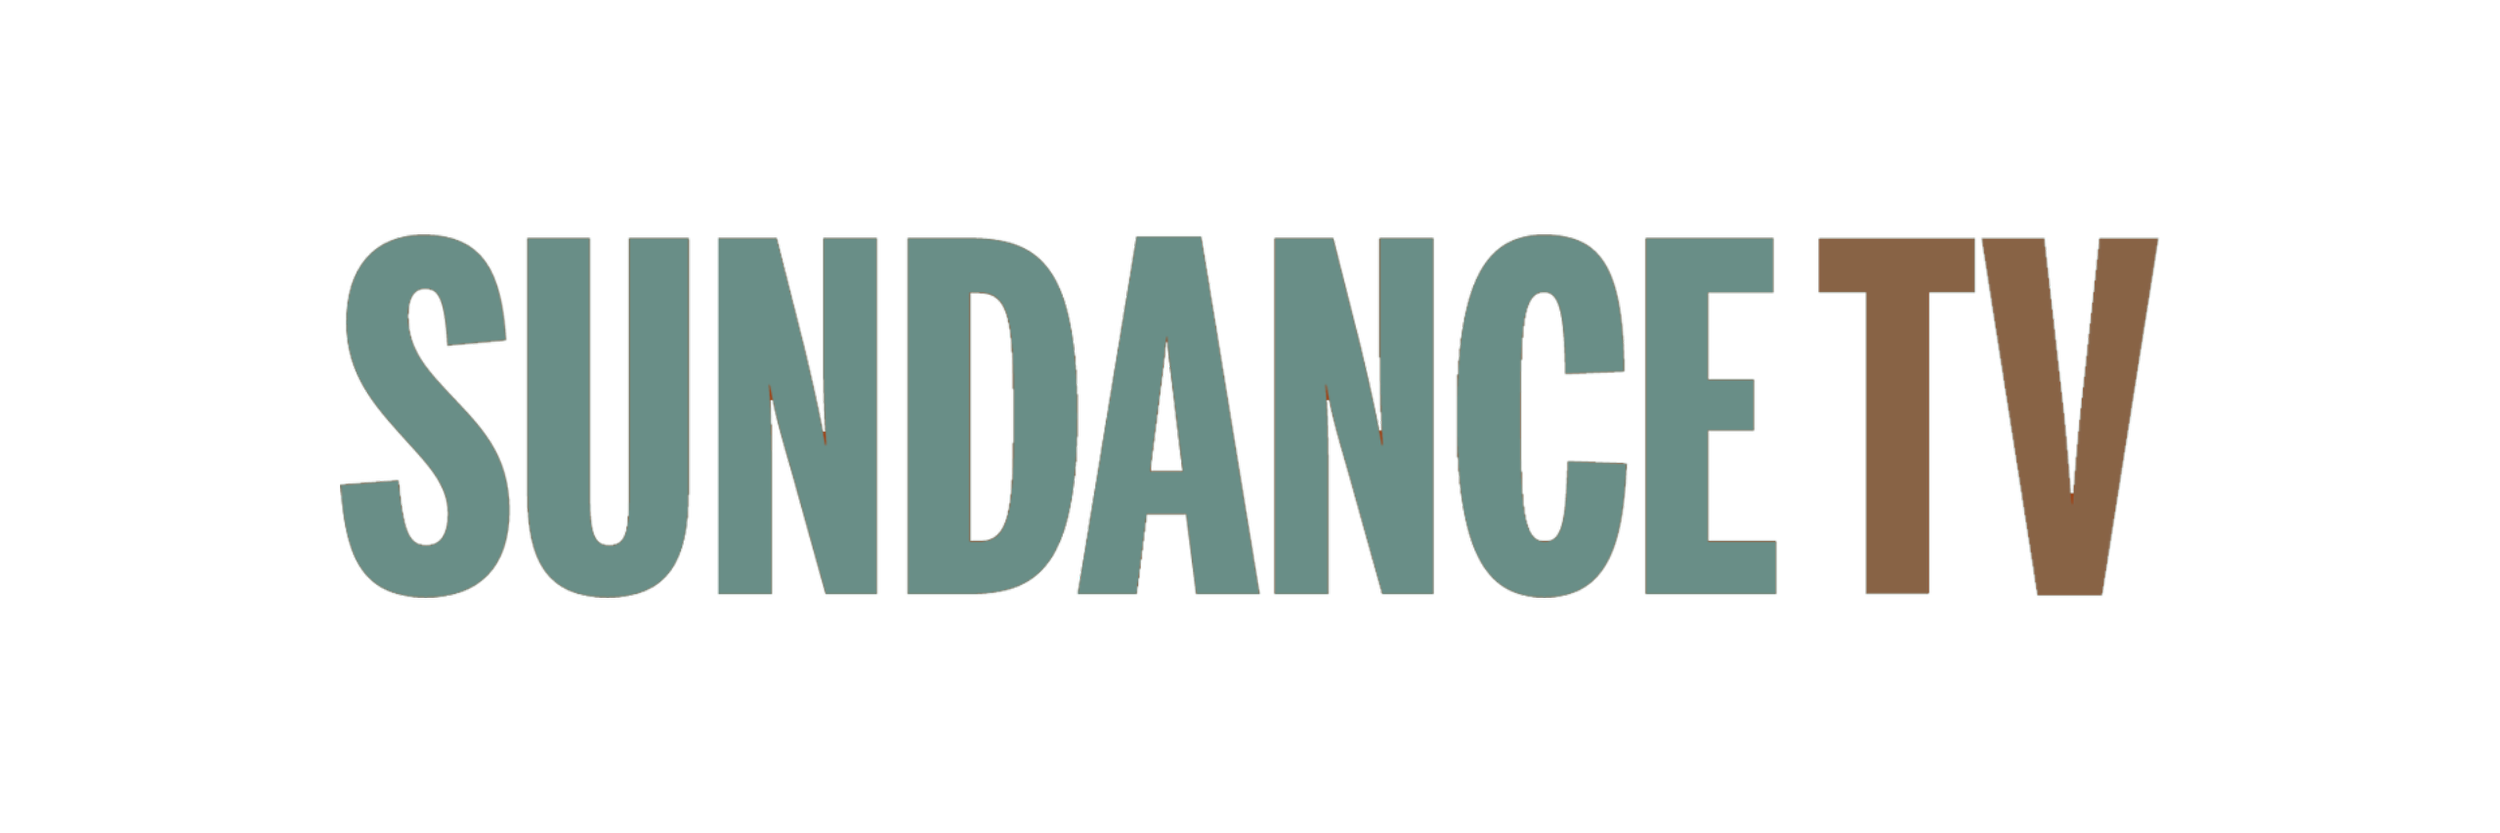 Sundance TV logo.png